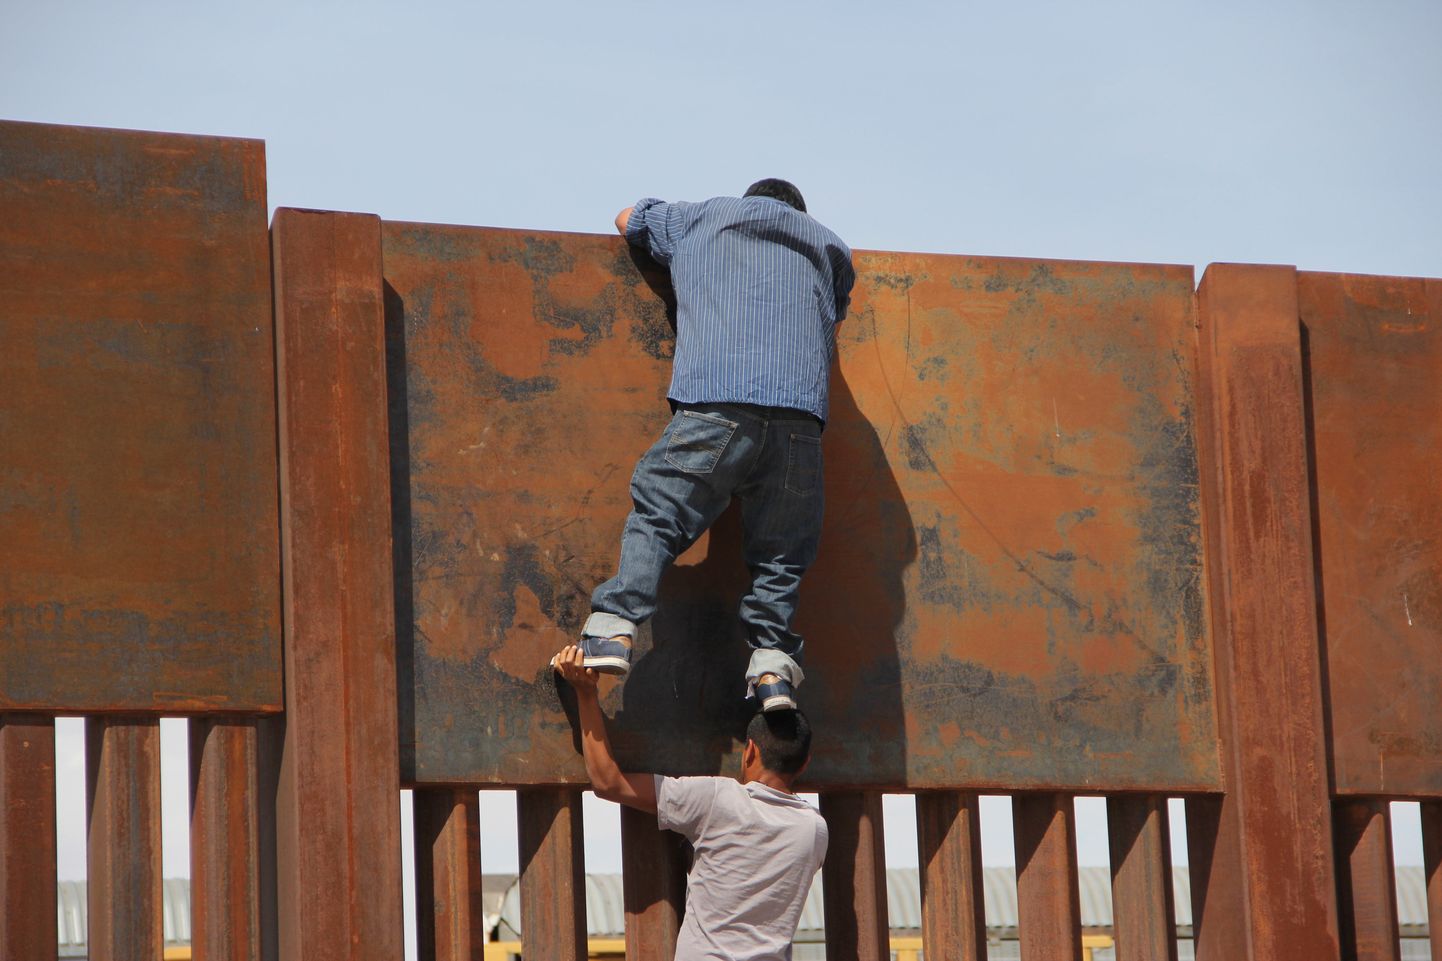 Noored mehhiklased USAd ja Mehhikot eraldavat piiri ületamas.